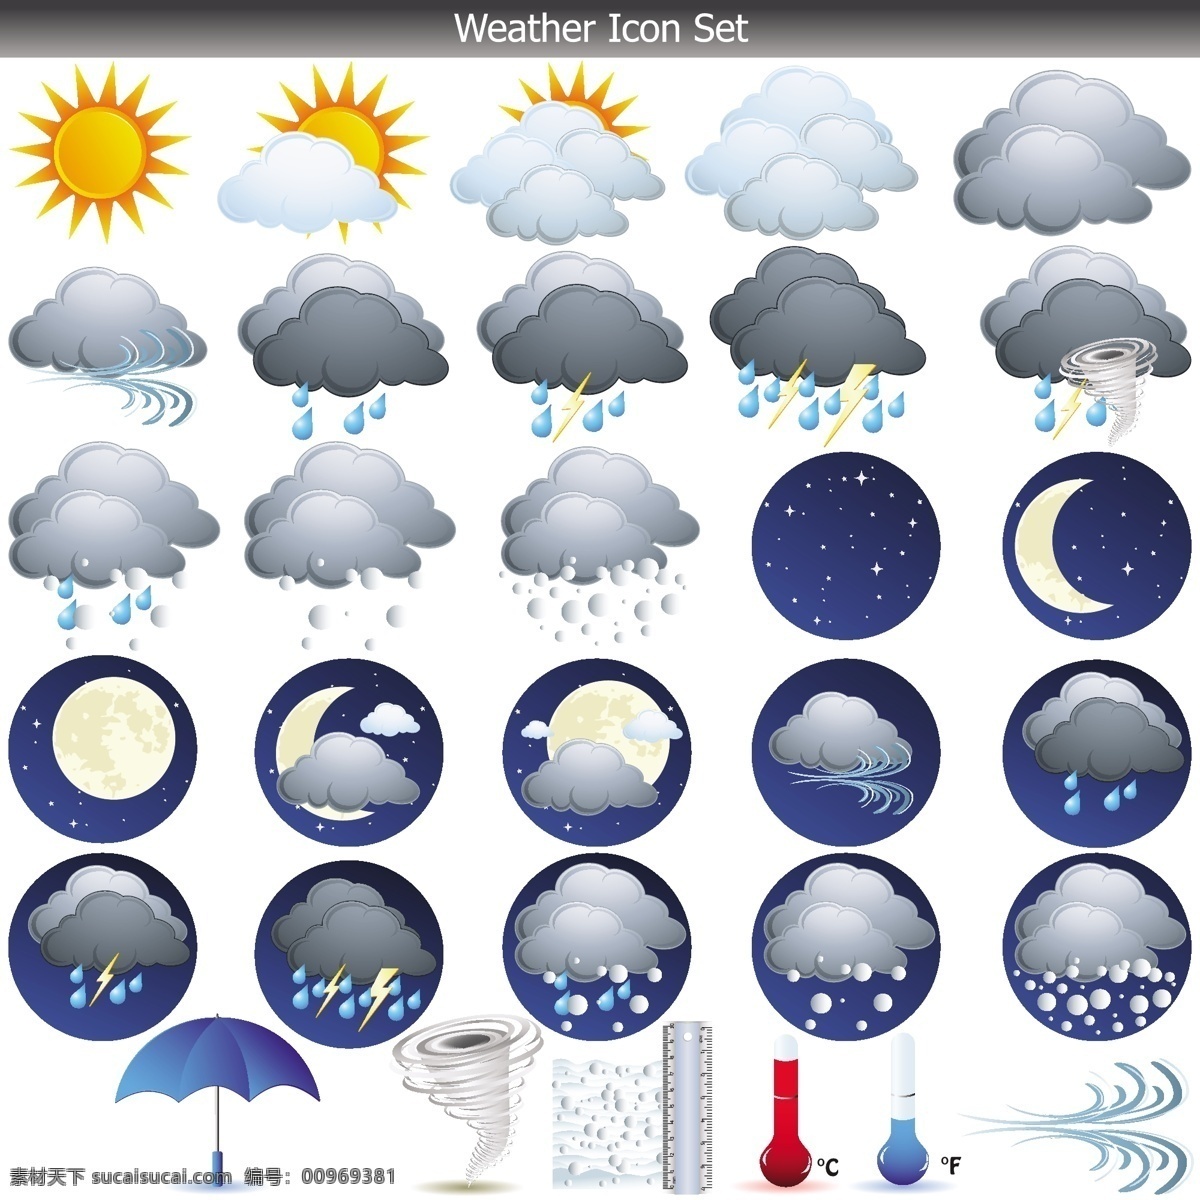 天气图标 图标 天气 网页 立体 weather 标志图标 网页小图标